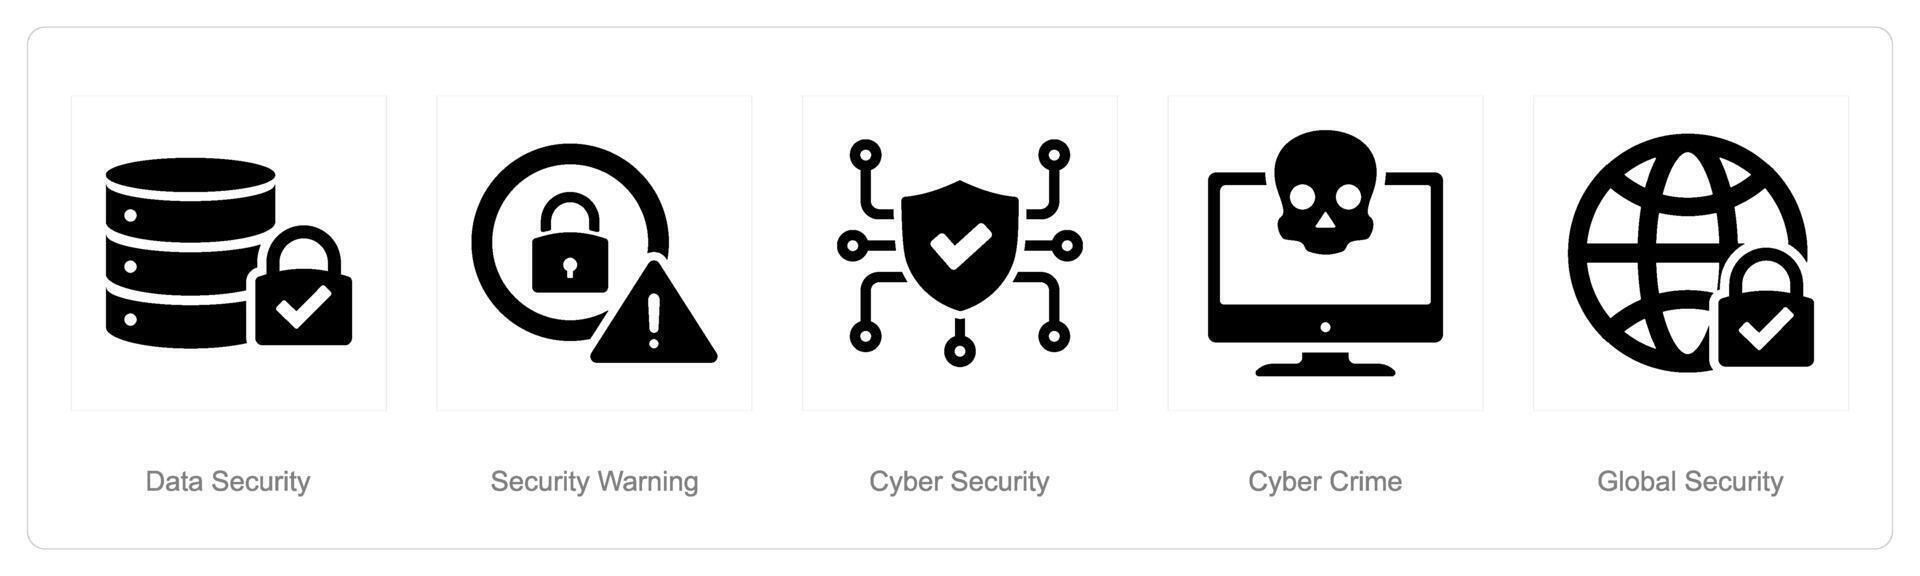 un conjunto de 5 5 ciber seguridad íconos como datos seguridad, seguridad advertencia, ciber seguridad vector